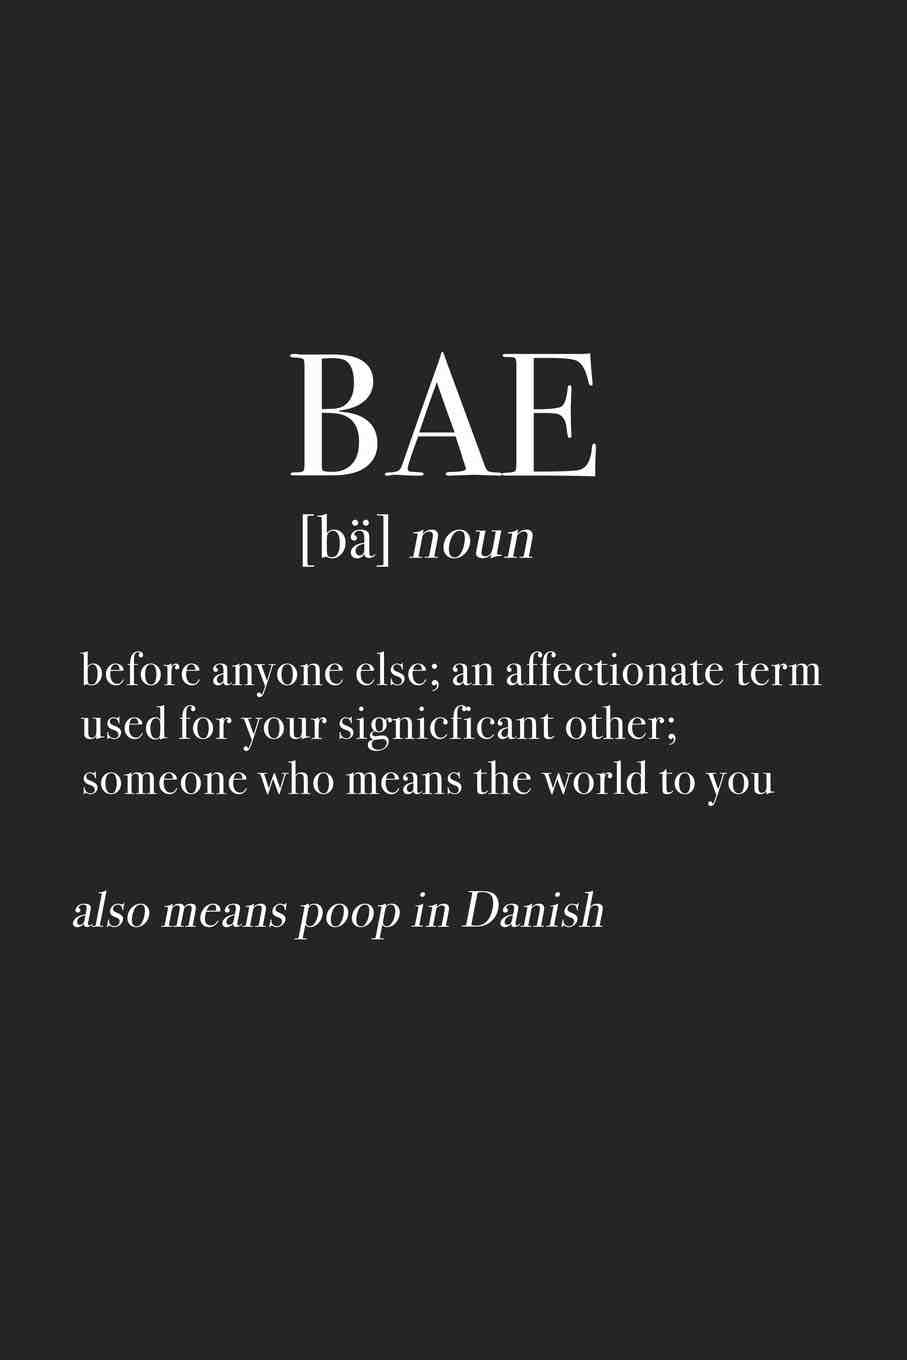 Qui a inventé le mot BAE ?